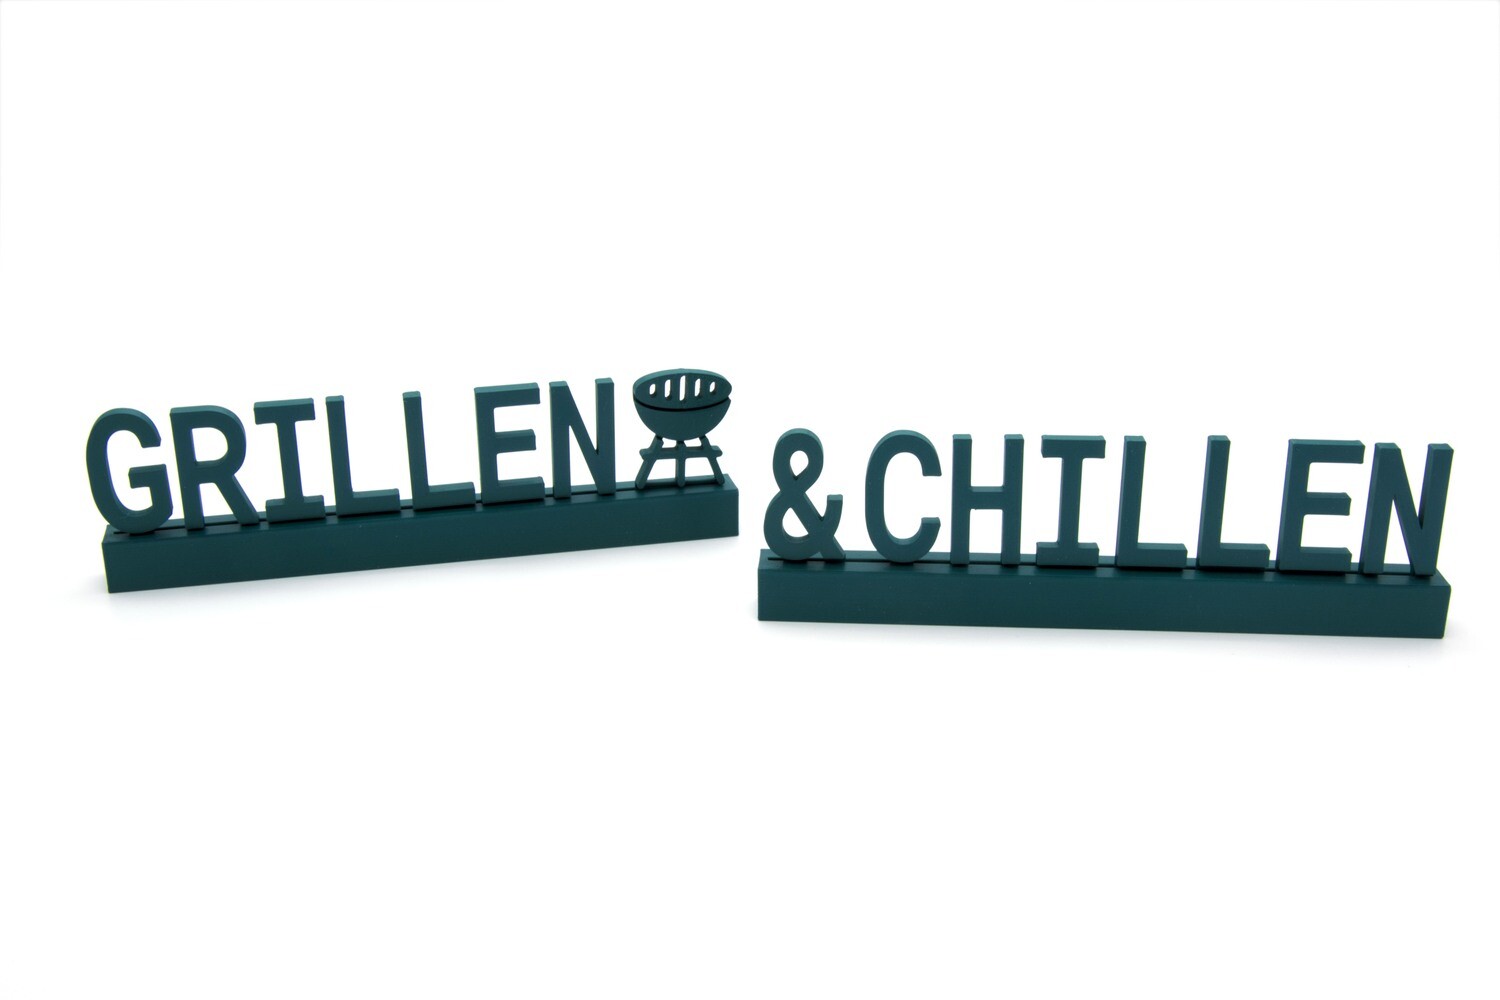 "Grillen & Chillen"